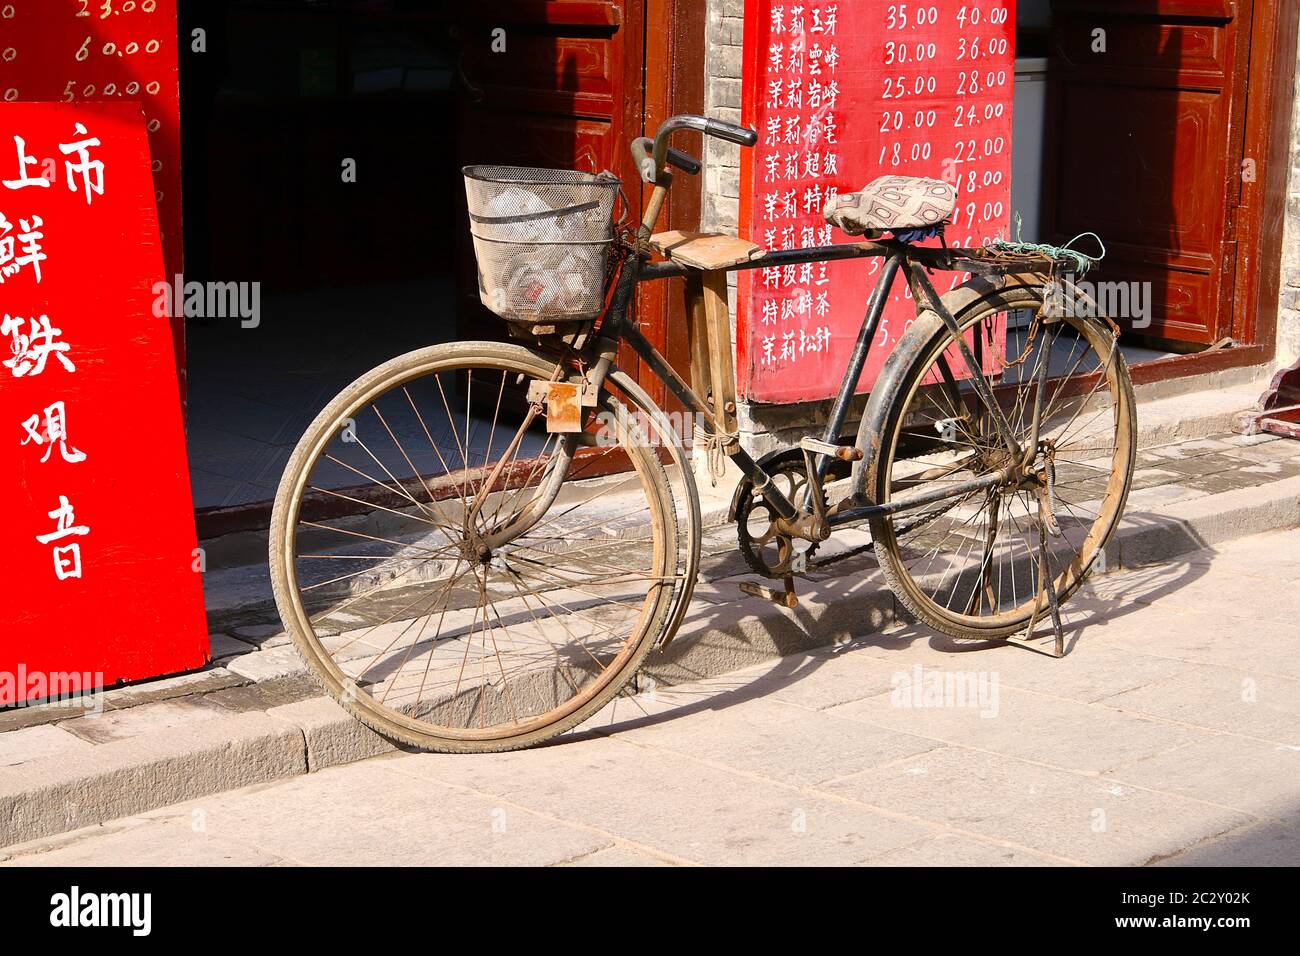 Imagen de una antigua bicicleta oxidada frente a una tienda, en la antigua  ciudad de Zhou Cun, provincia de Shandong, China. Orientación horizontal  Fotografía de stock - Alamy